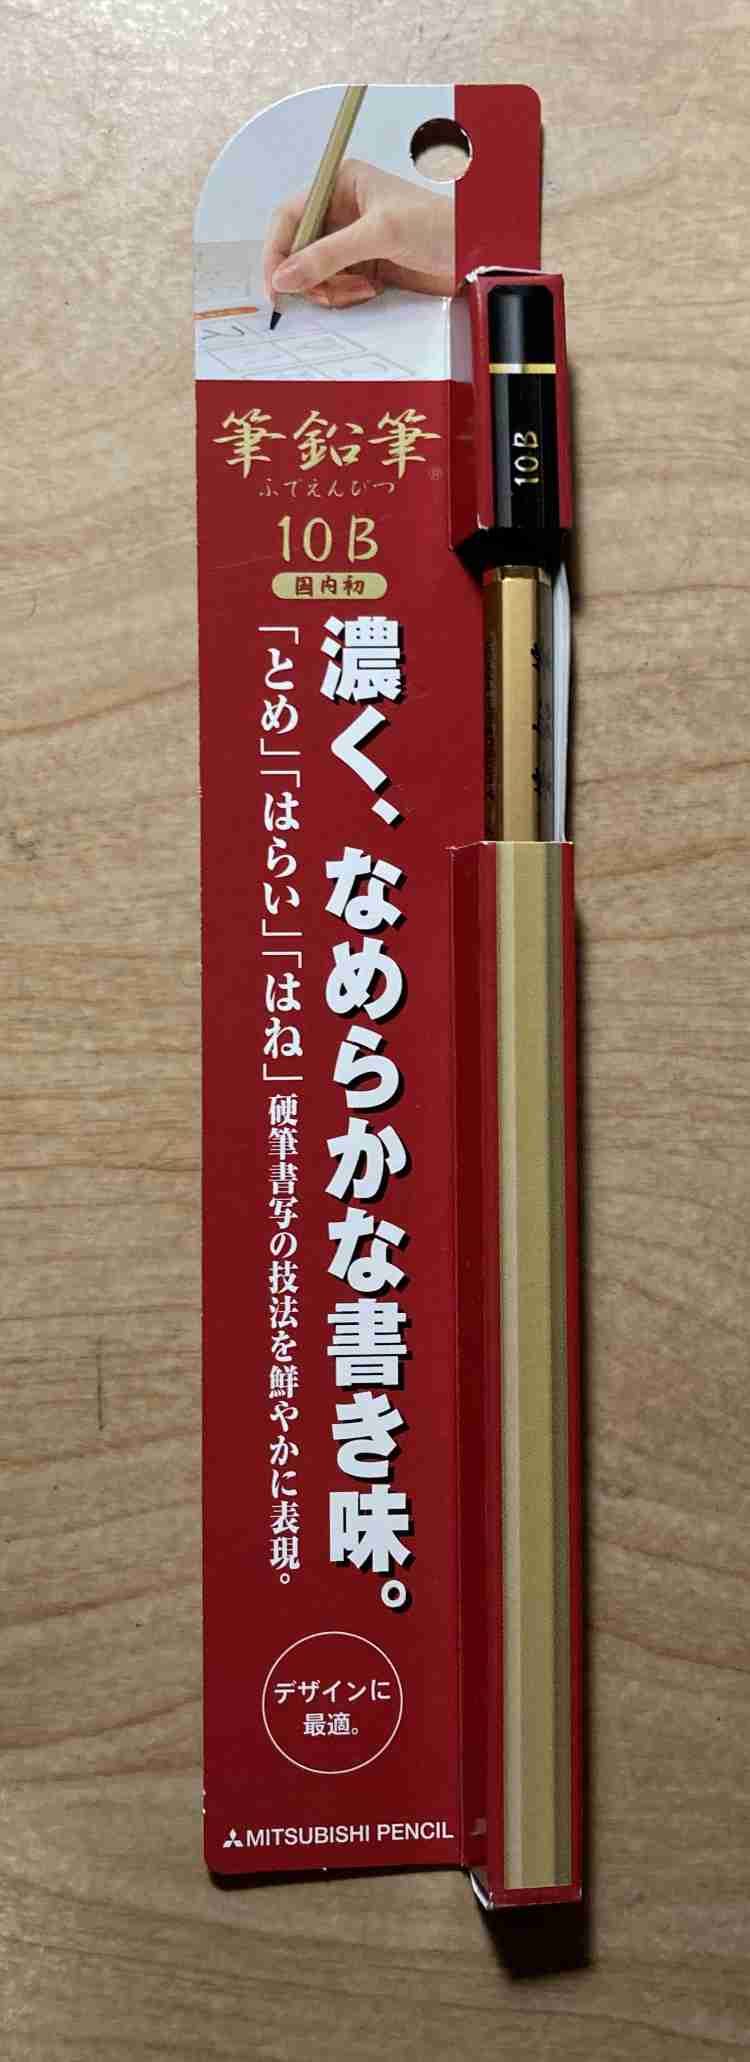 j 3 angle 4B dozen entered uni Mitsubishi Pencil Kohitsu Shosha for pencil 